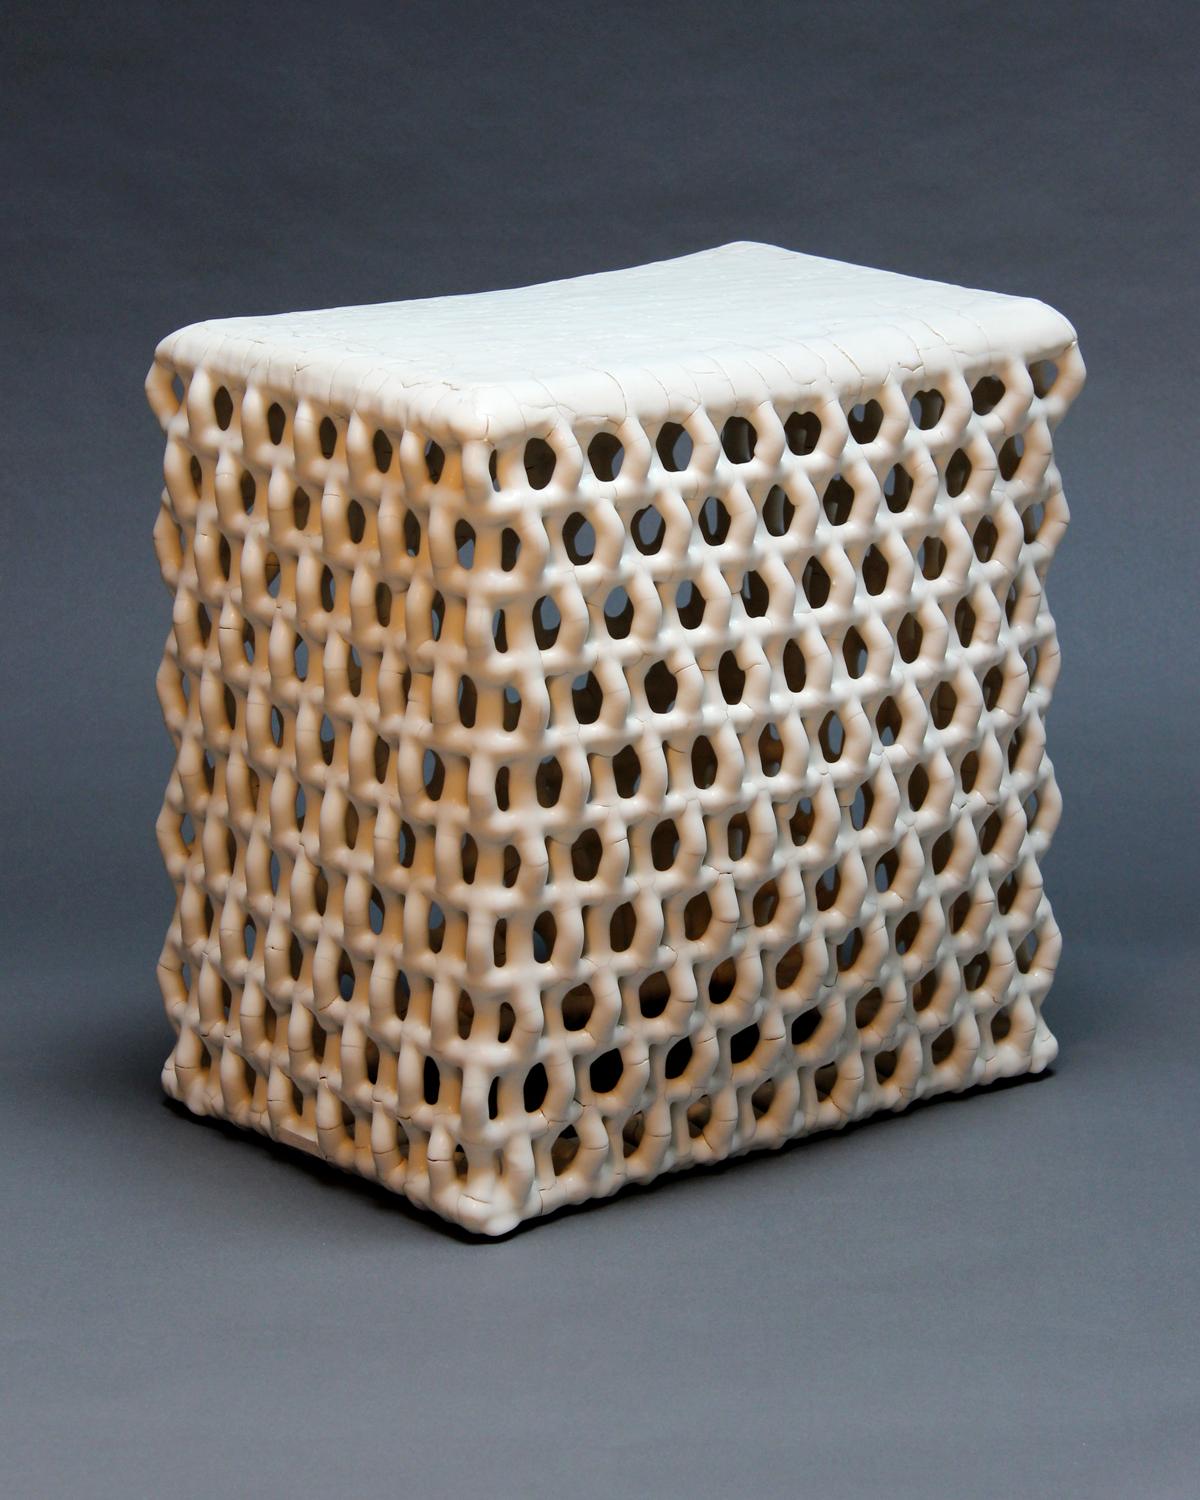 Rhombus Tisch von Scott Daniel Design. Dieses Design ergibt sich aus den einzelnen vertikalen Drahtgliedern, die von Hand zu einem winkligen Muster gebogen werden, und ist eine Methode, die in zahlreichen Anwendungen eingesetzt wird. Ein Rhombus ist